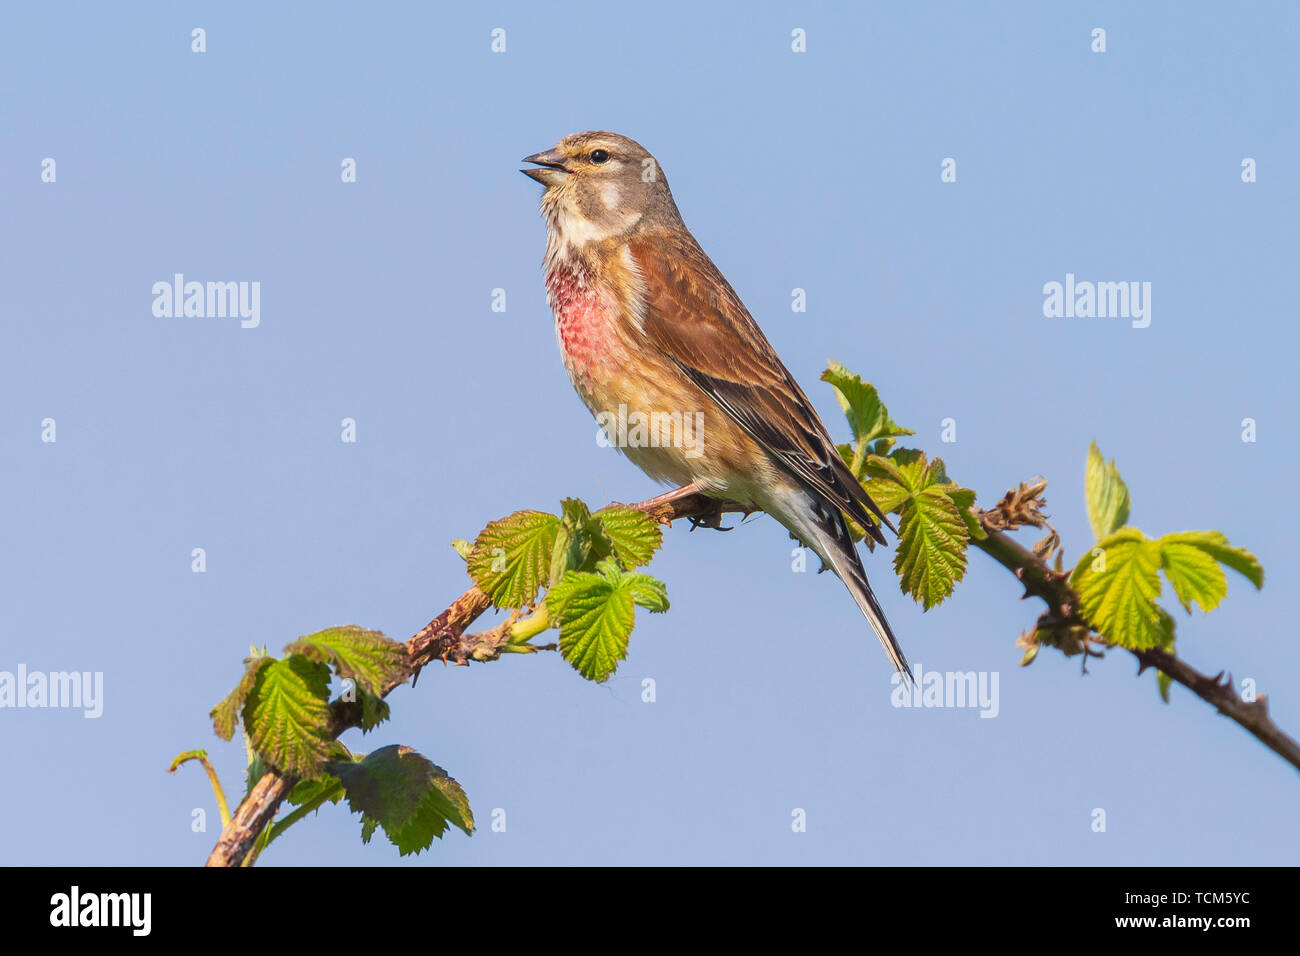 Closeup Portrait einer hänfling Vogel männlich, Carduelis cannabina, Display und die Suche nach einem Gehilfen im Frühling Saison. Das Singen im frühen Morgen sunli Stockfoto